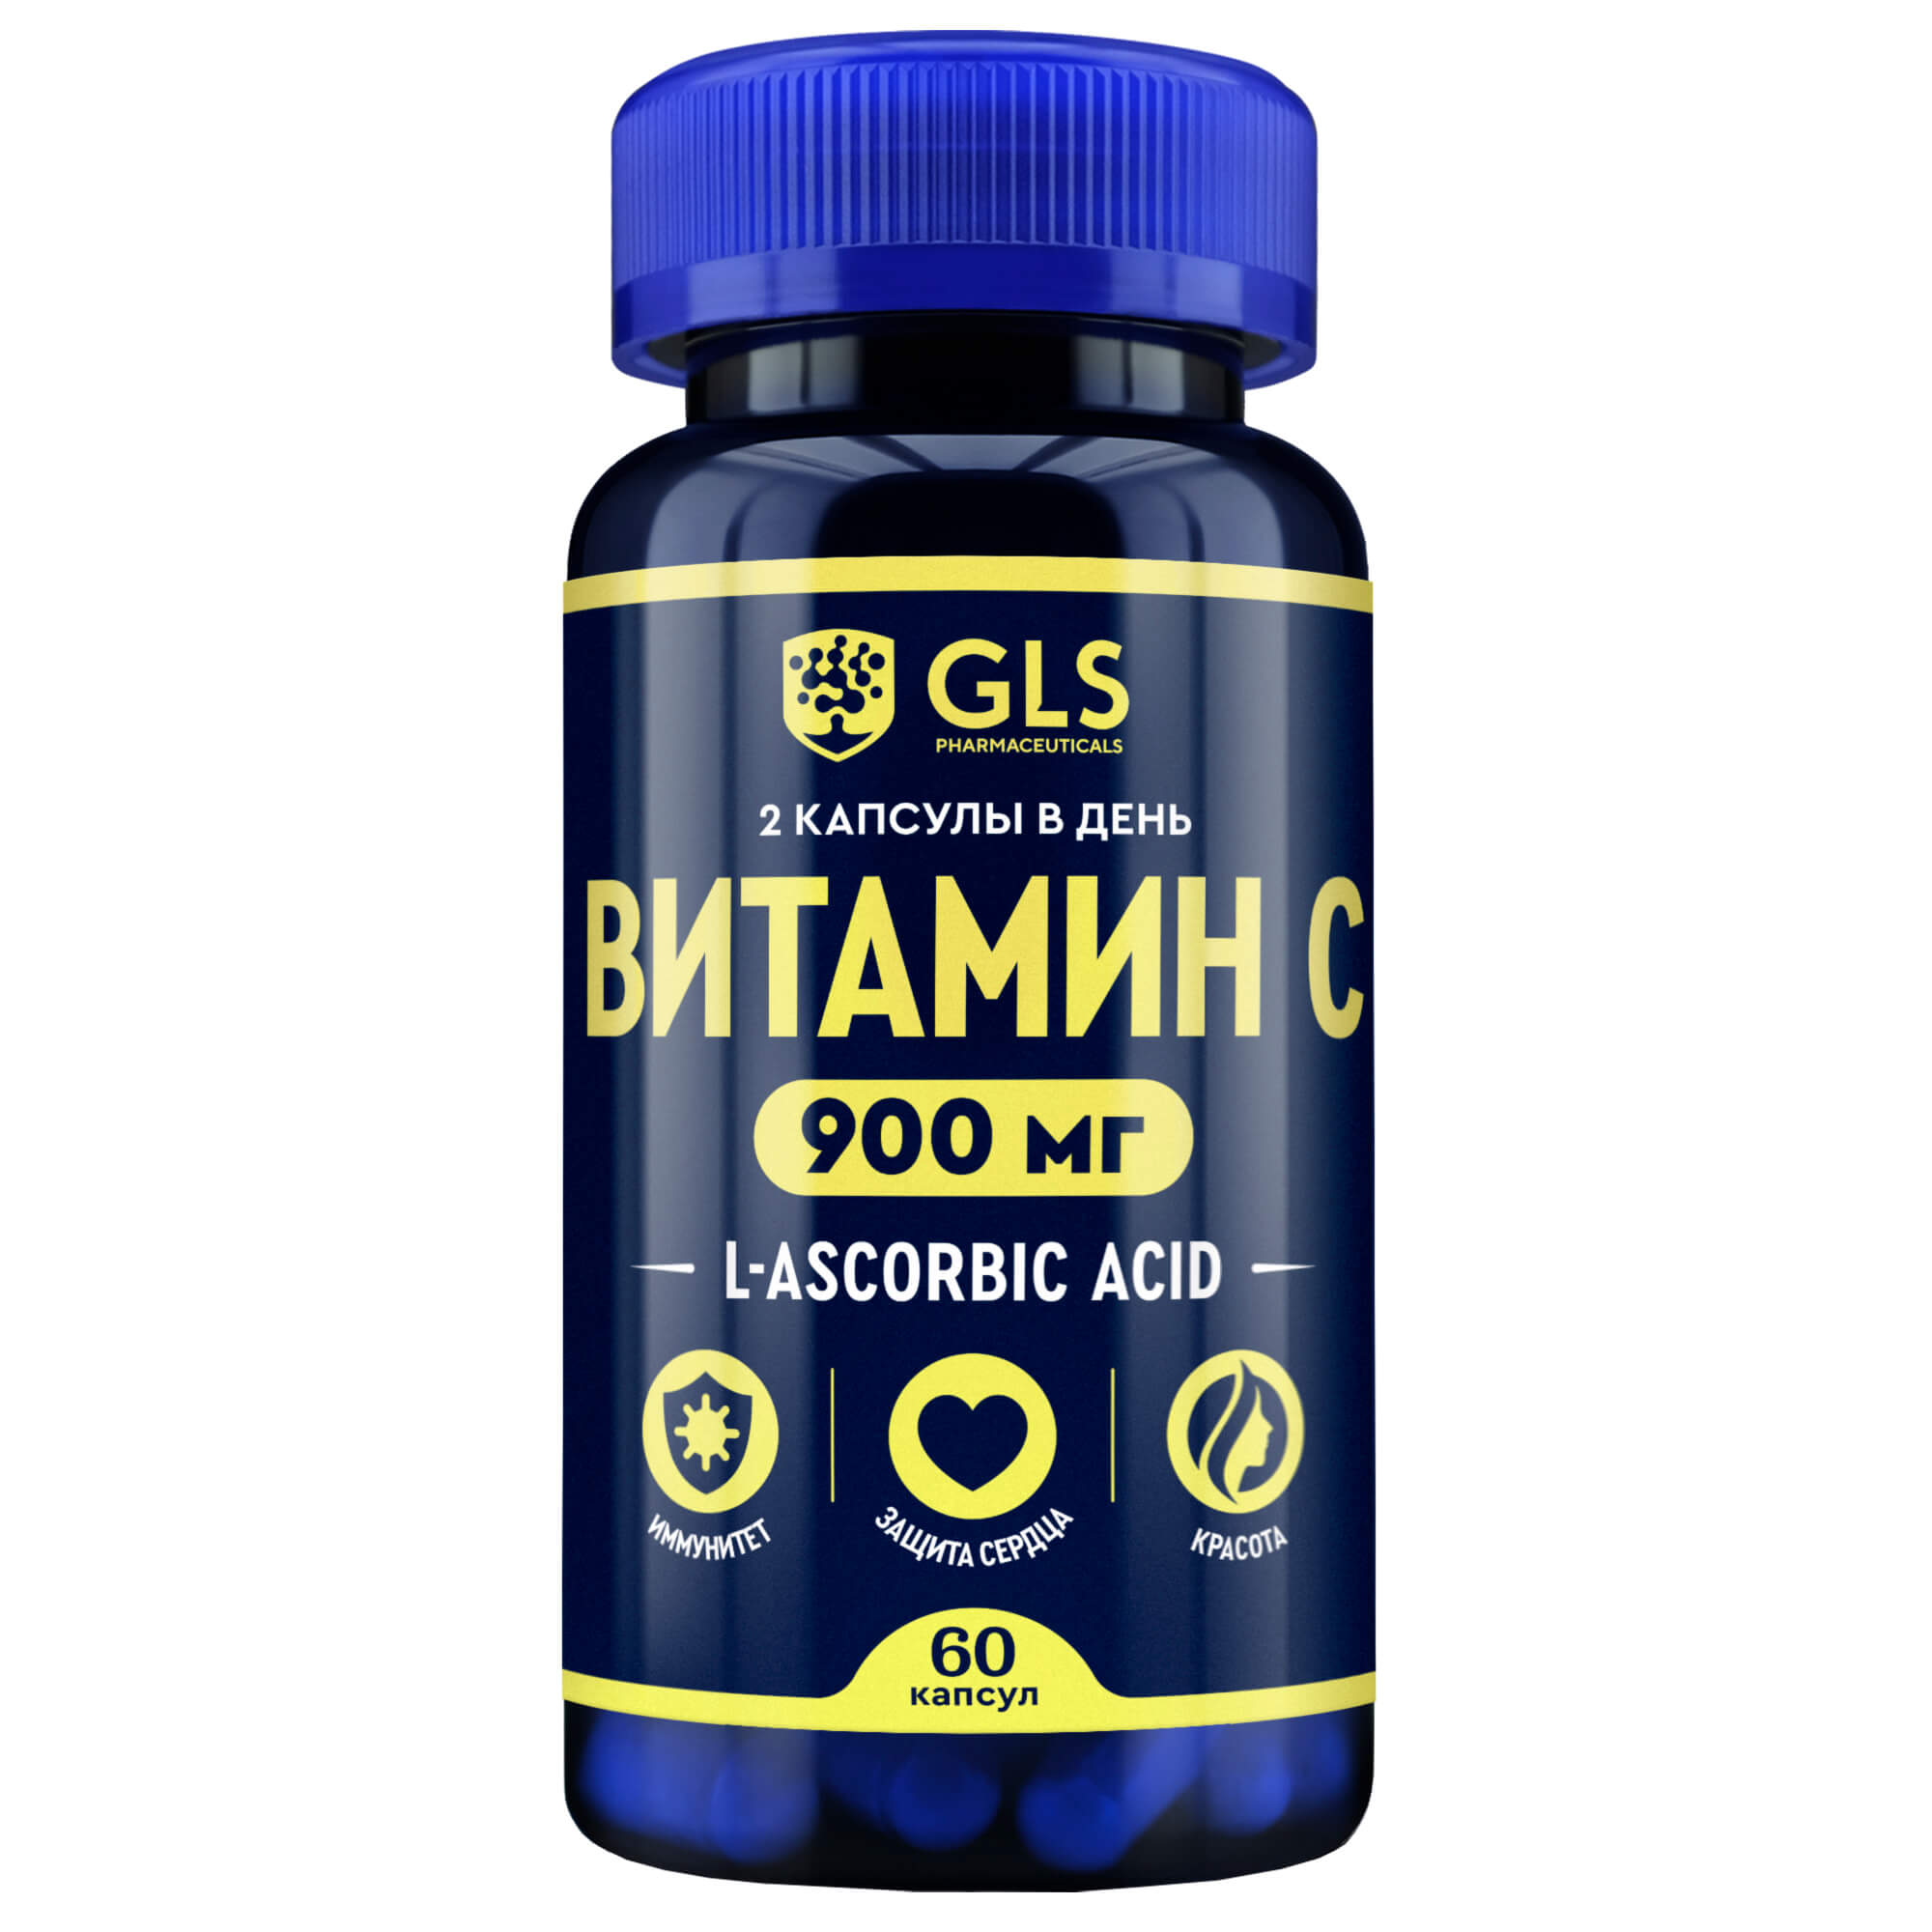 Витамины gls отзывы врачей. GLS витамин с 900 60 капсул по 500мг. GLS витамины. "GLS витамин е". GLS витамины производитель.